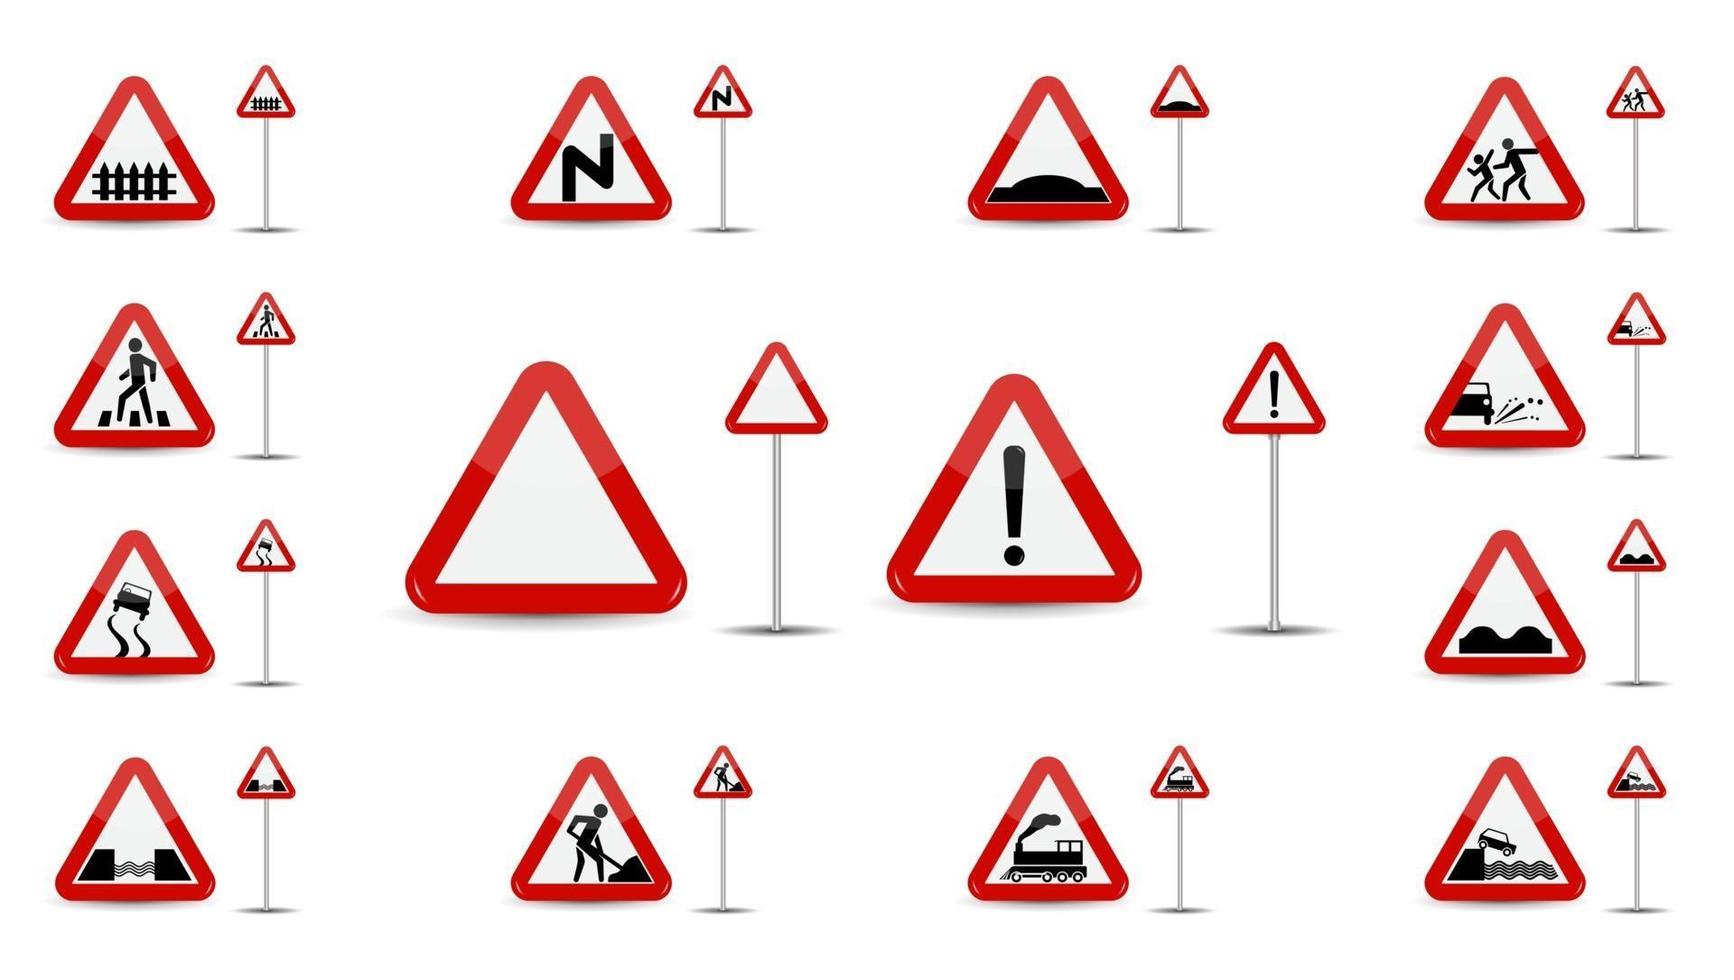 Satz Warnzeichen im roten Dreieck ist eine skizzenhafte verschiedene Arten von Sonderzeichen für Autofahrer vektor